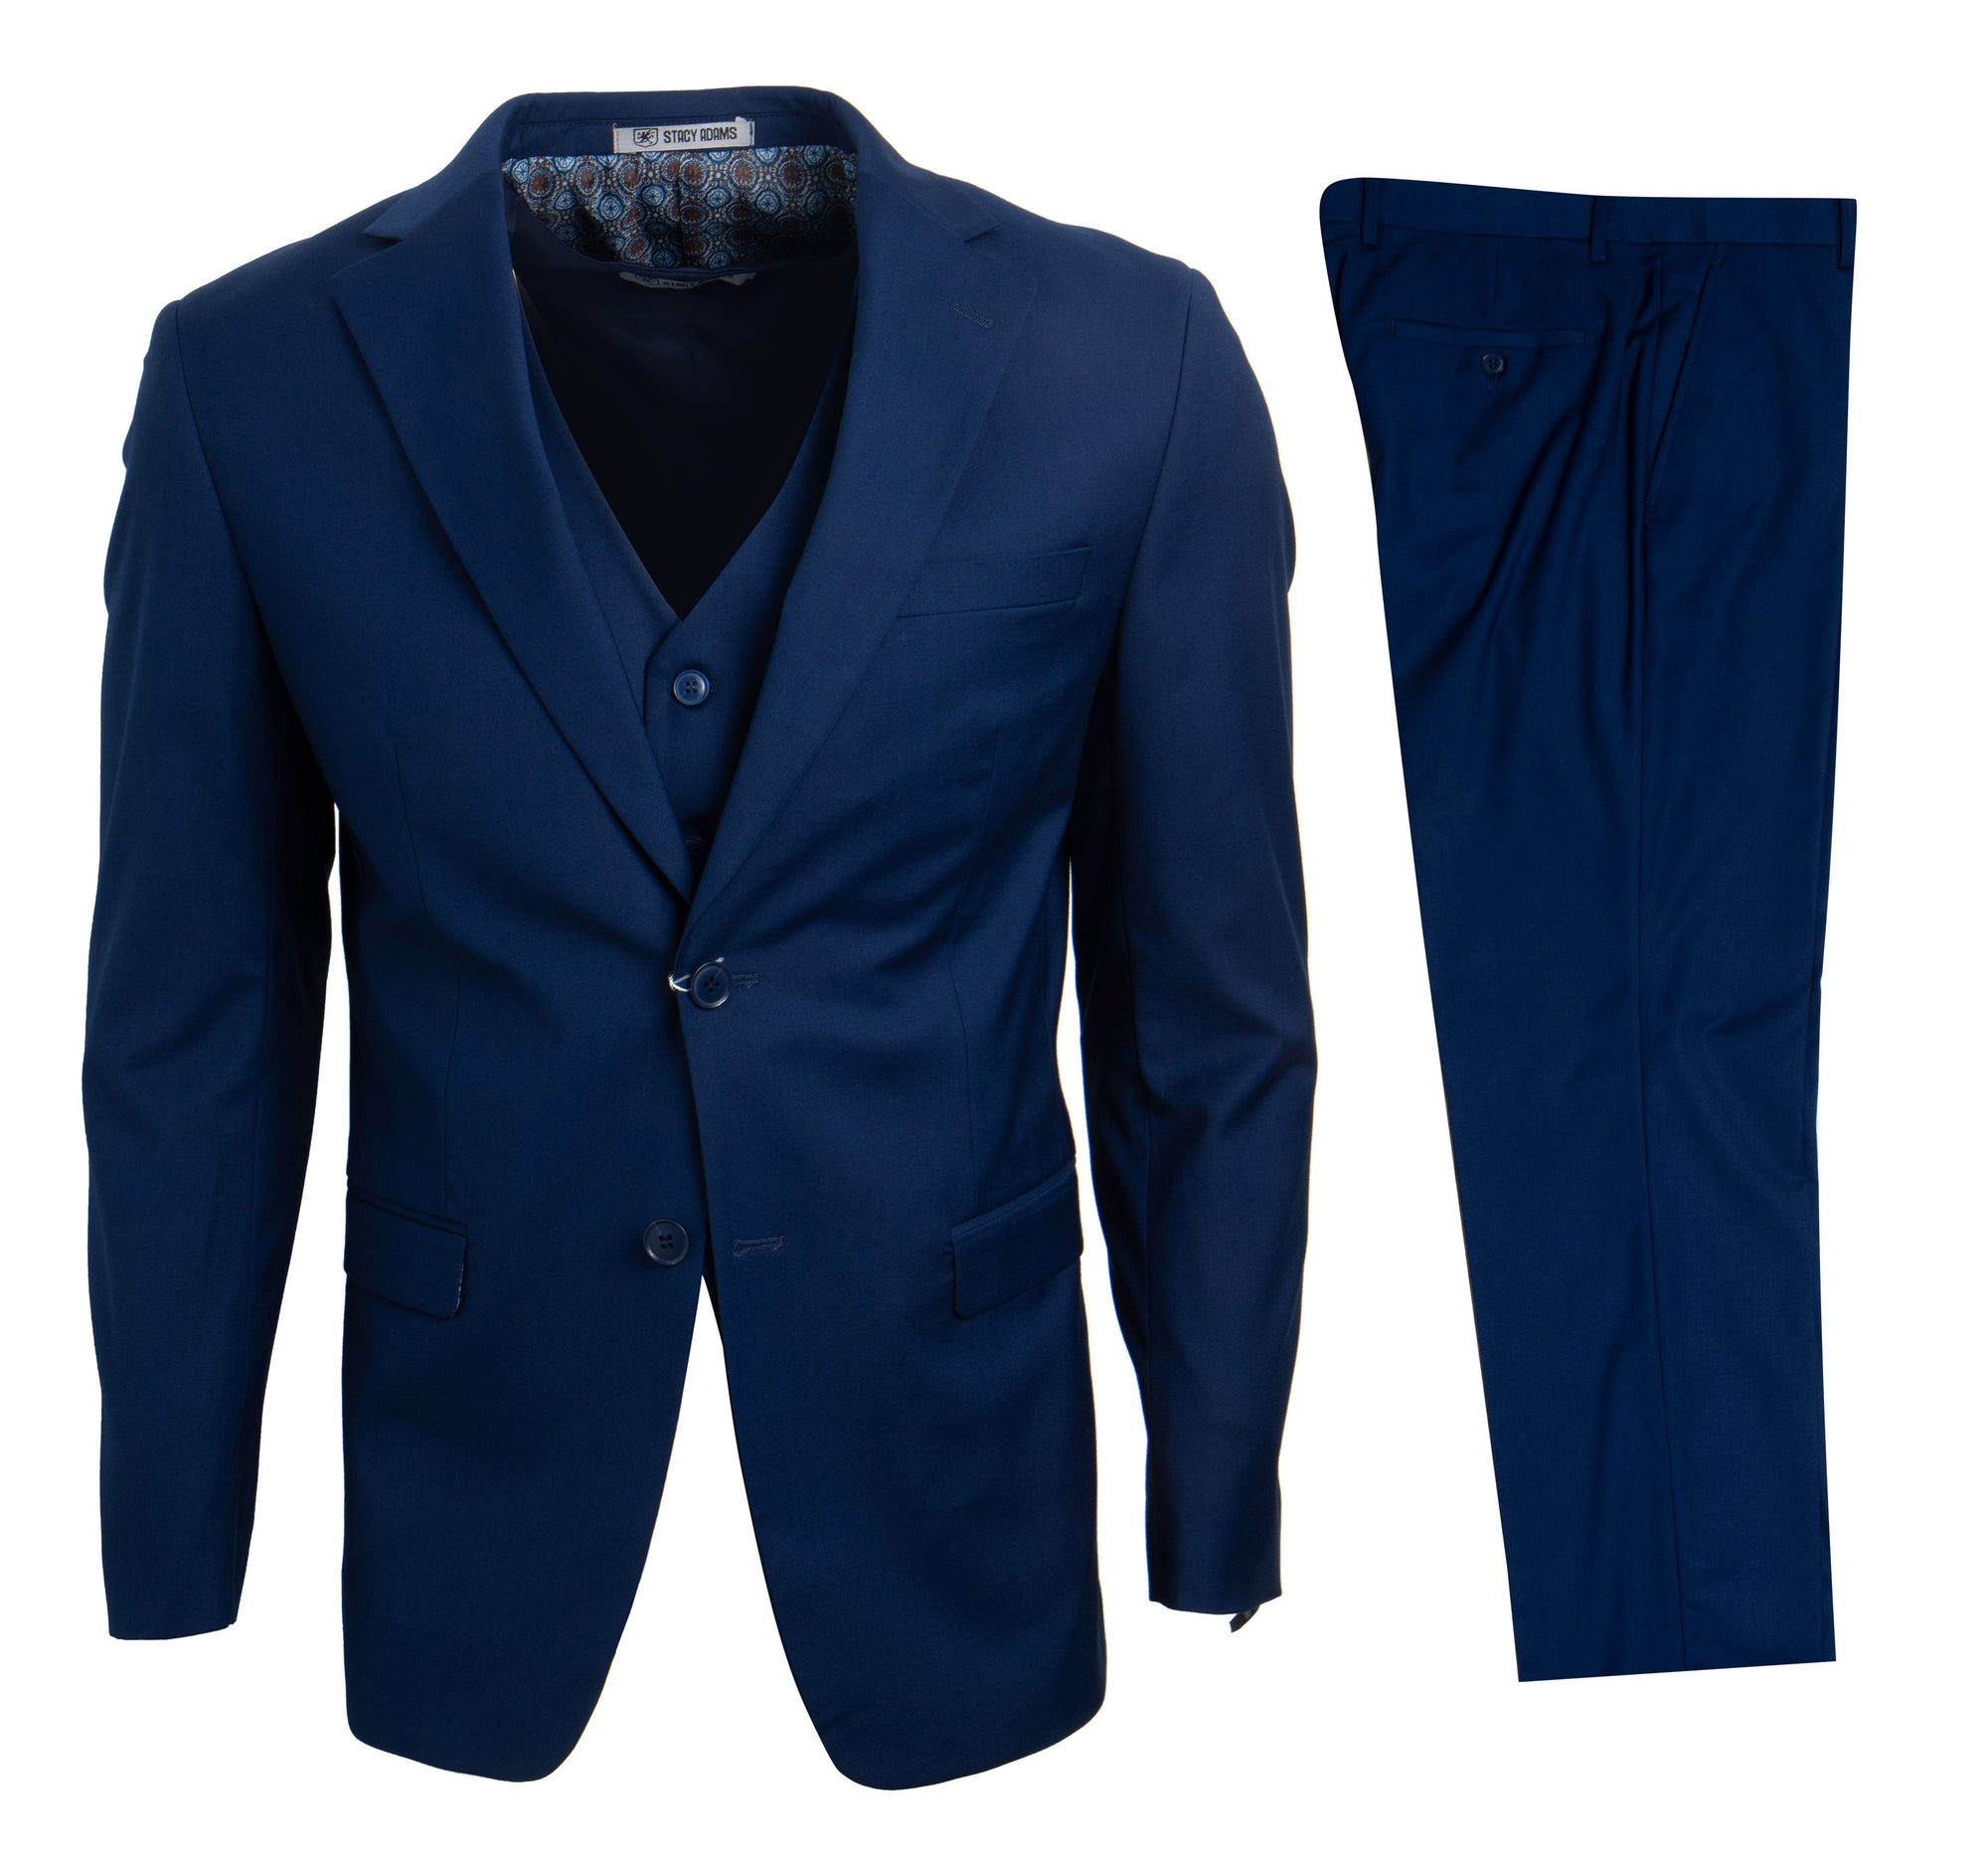 Men's Blue Stacy Adams Suit